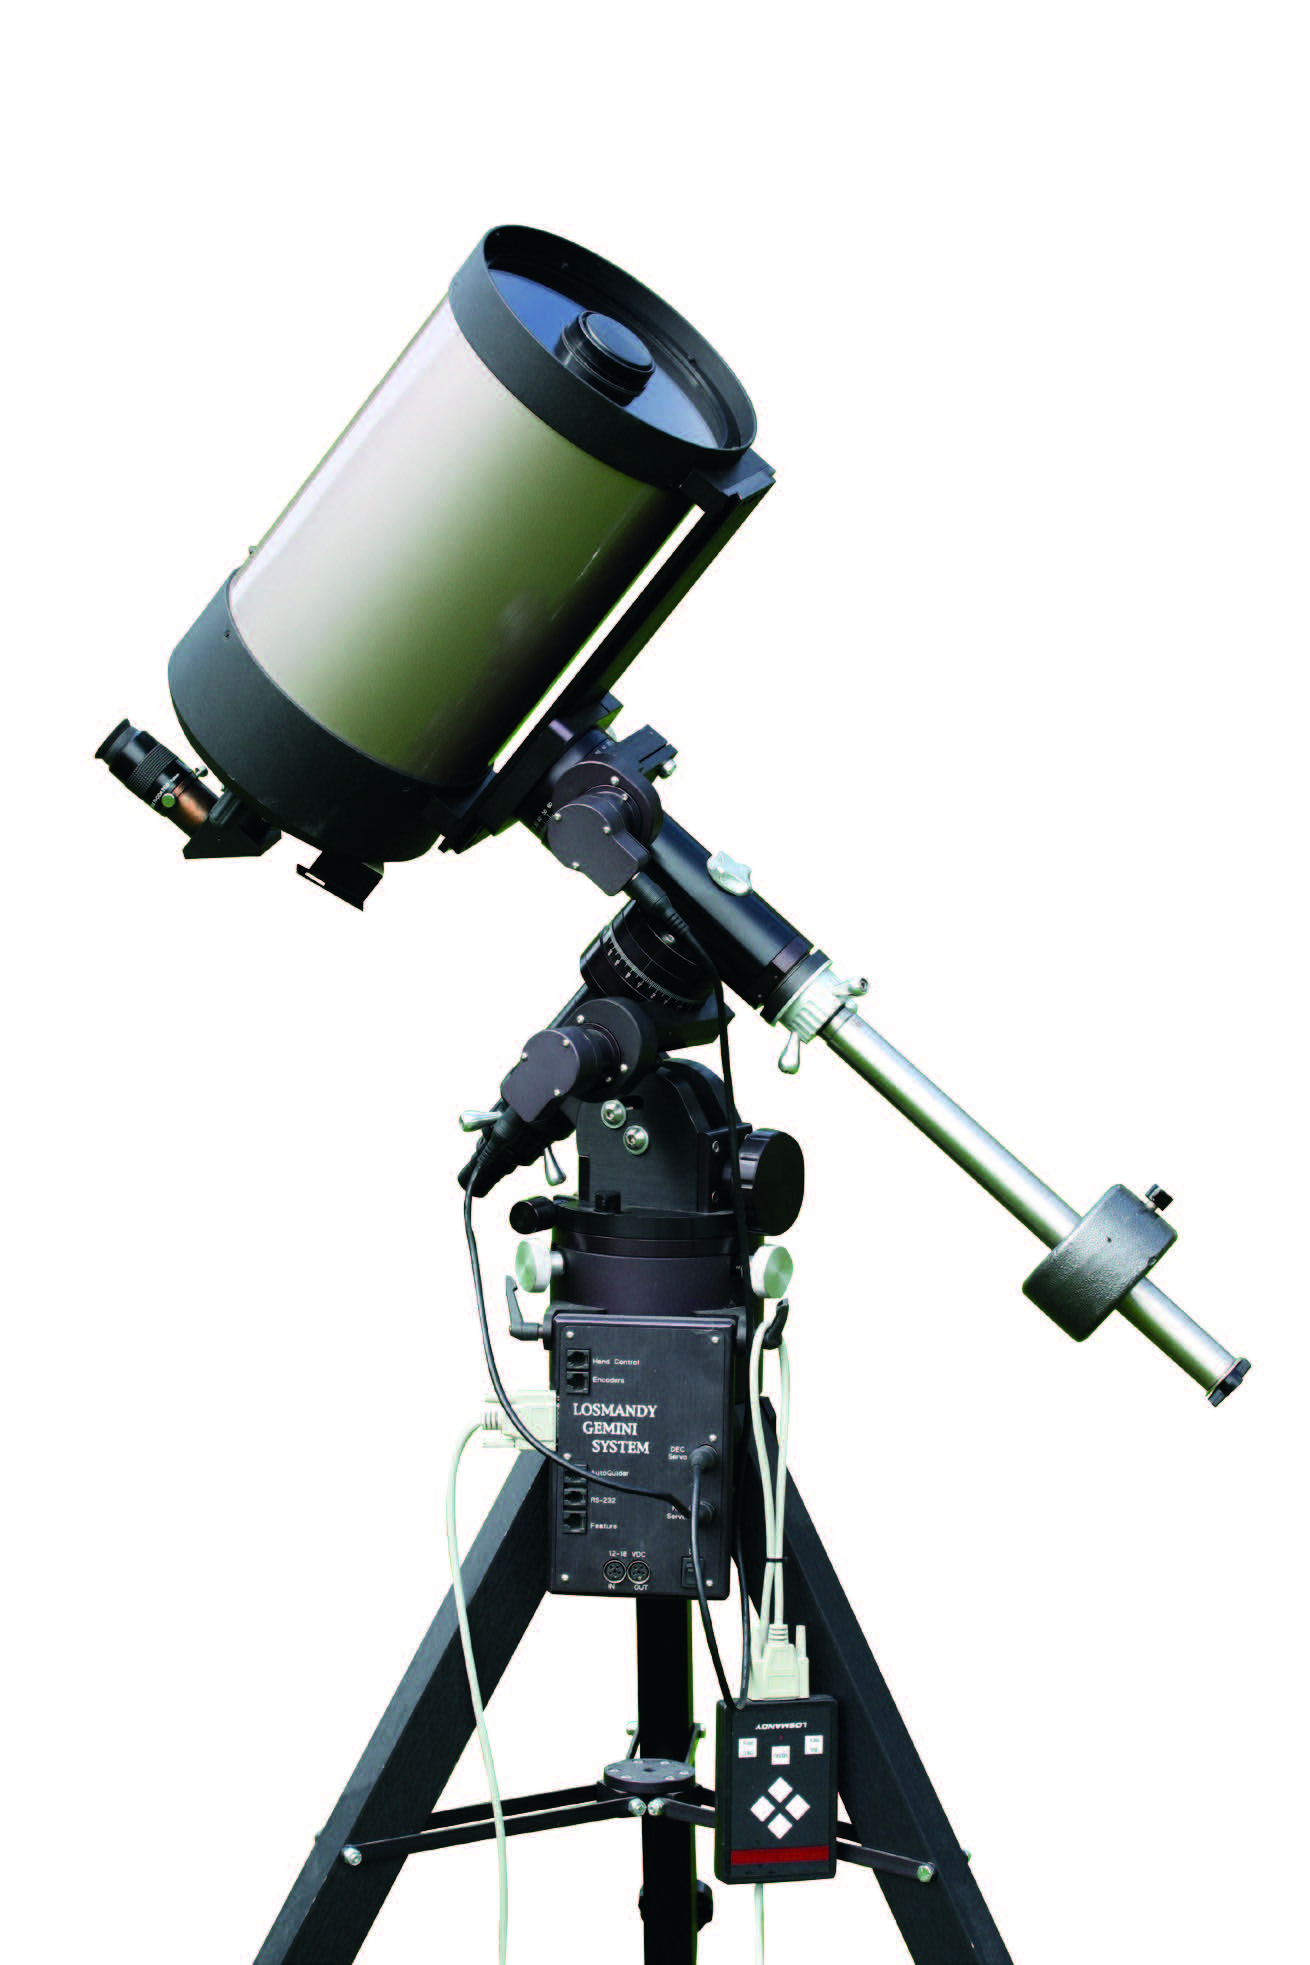 För observation av månen och planeterna används här ett Schmidt-Cassegrain-teleskop på en tysk montering av typen Losmandy GM-8. Denna montering är avsevärt robustare och därmed mer bärkraftig än den lättare monteringen som visas i bild 2. Båda axlarna i denna montering är motorstyrda, och dessutom har monteringen en GoTo-funktion som möjliggör datorstyrd inriktning mot ett stort antal himmelsobjekt.